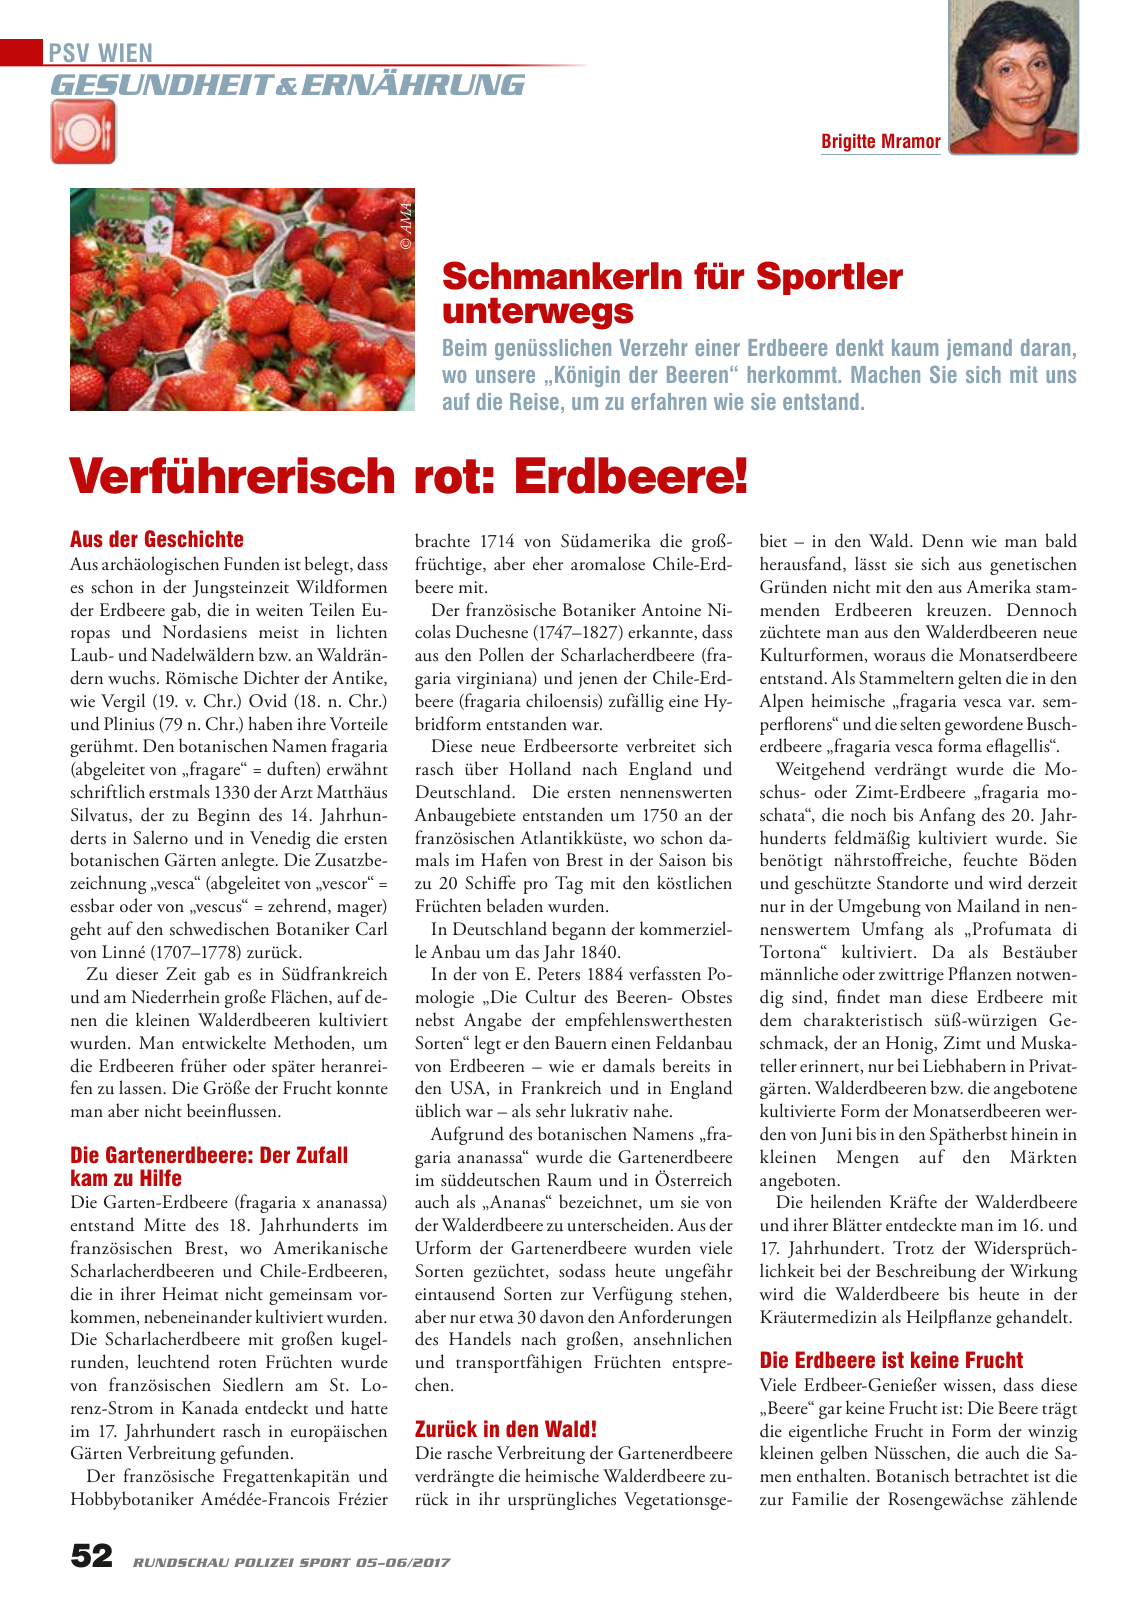 Vorschau Rundschau Polizei Sport 05-06/2017 Seite 52